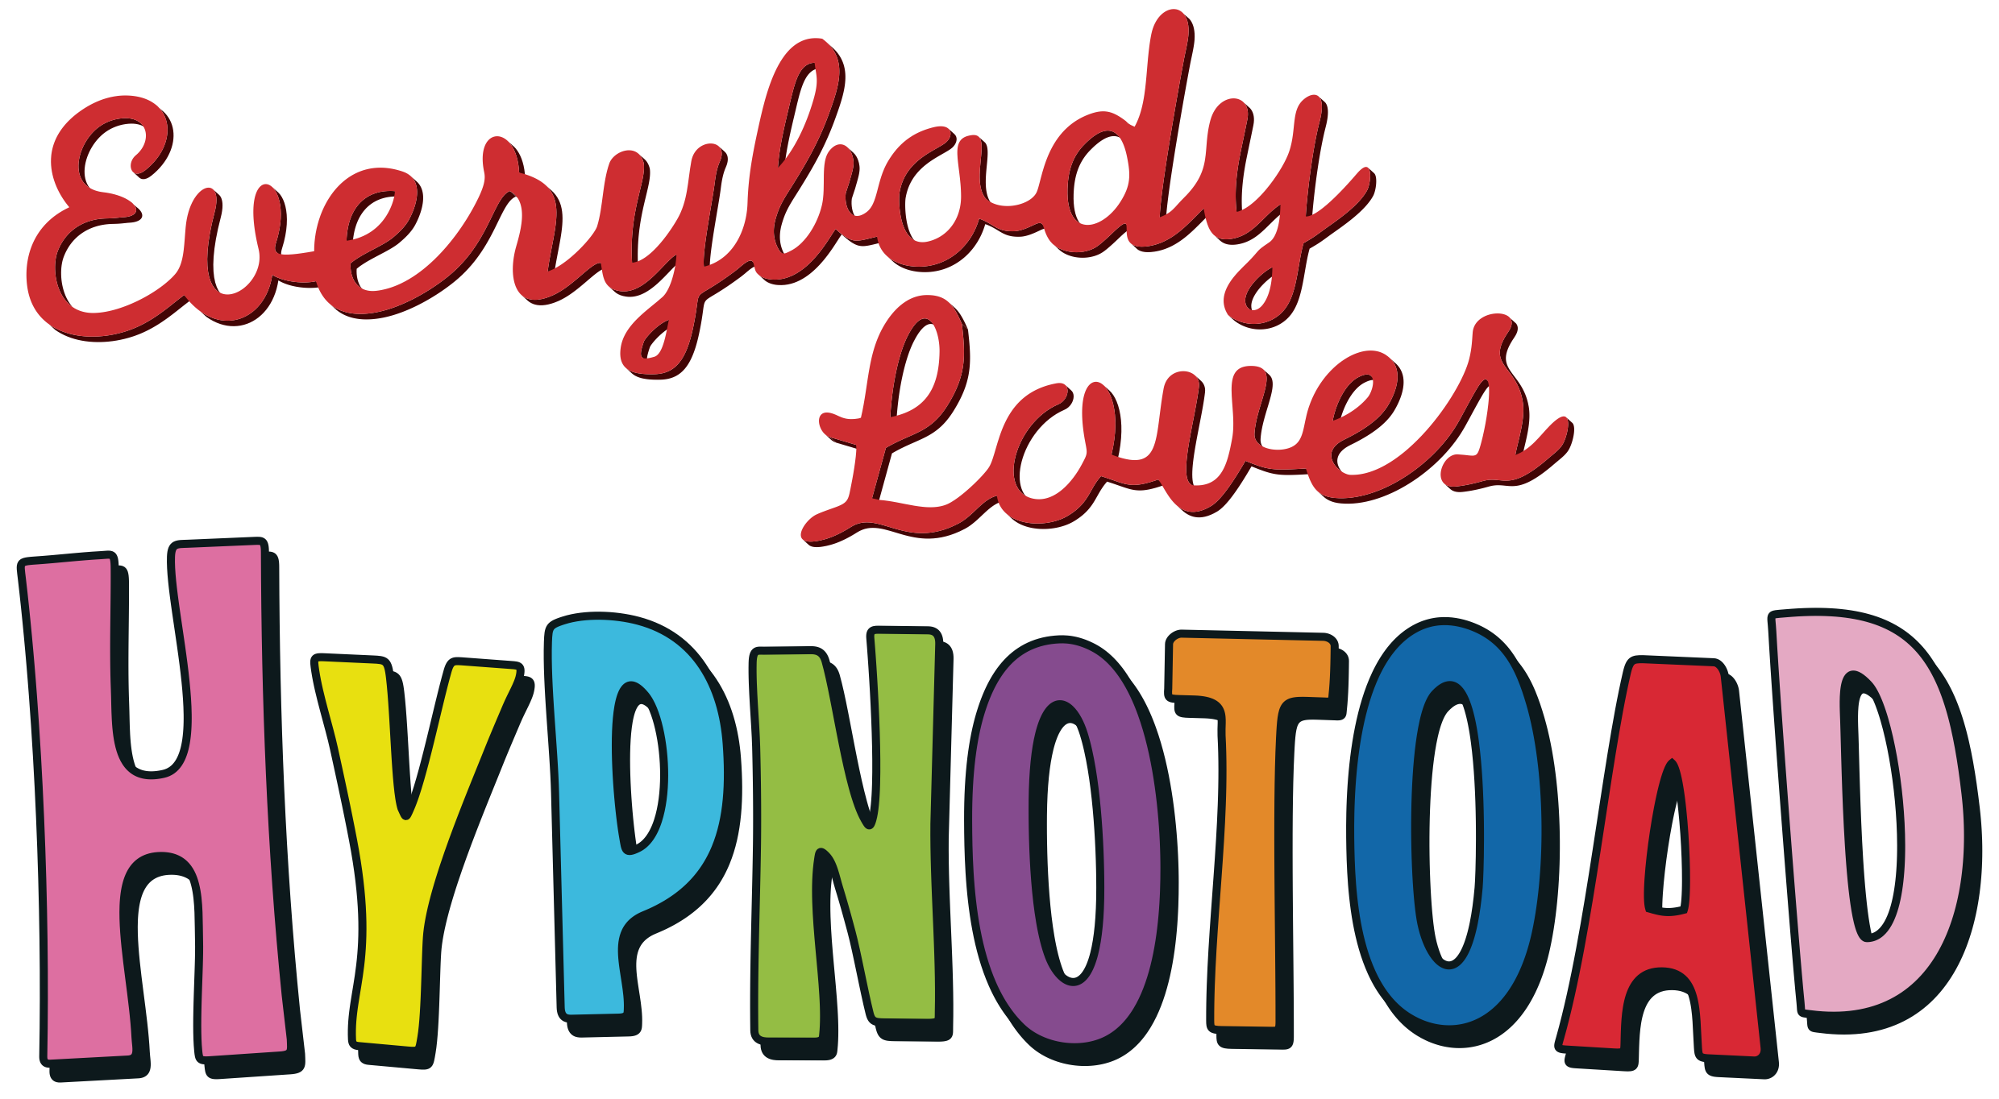 hypnotoad